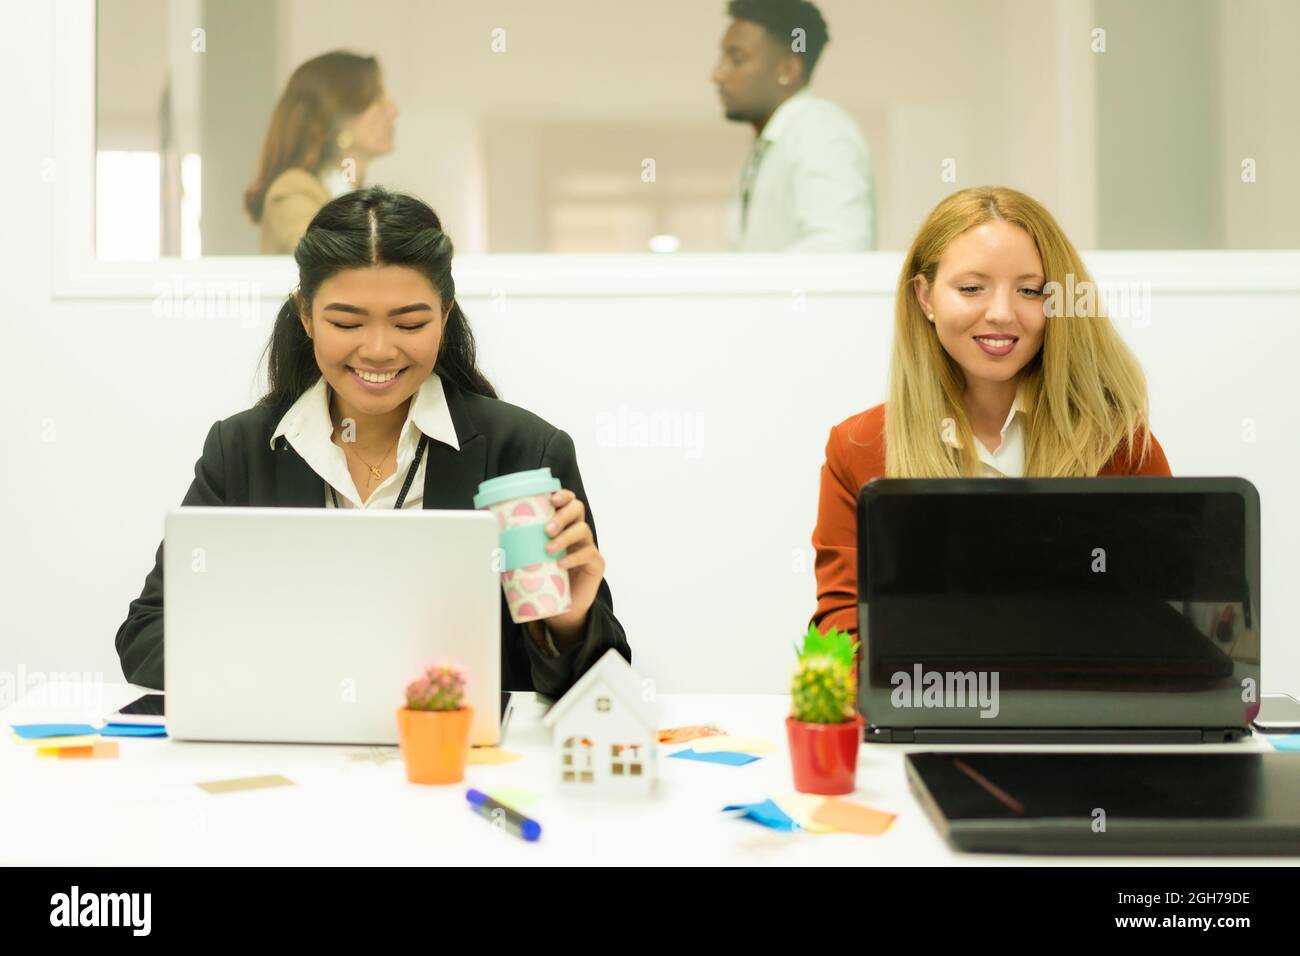 Foto di allegre donne multirazziali in camicia bianca e giacca nera, sorridenti e scriventi con un computer portatile. Concetto di lavoro e studio. Foto Stock